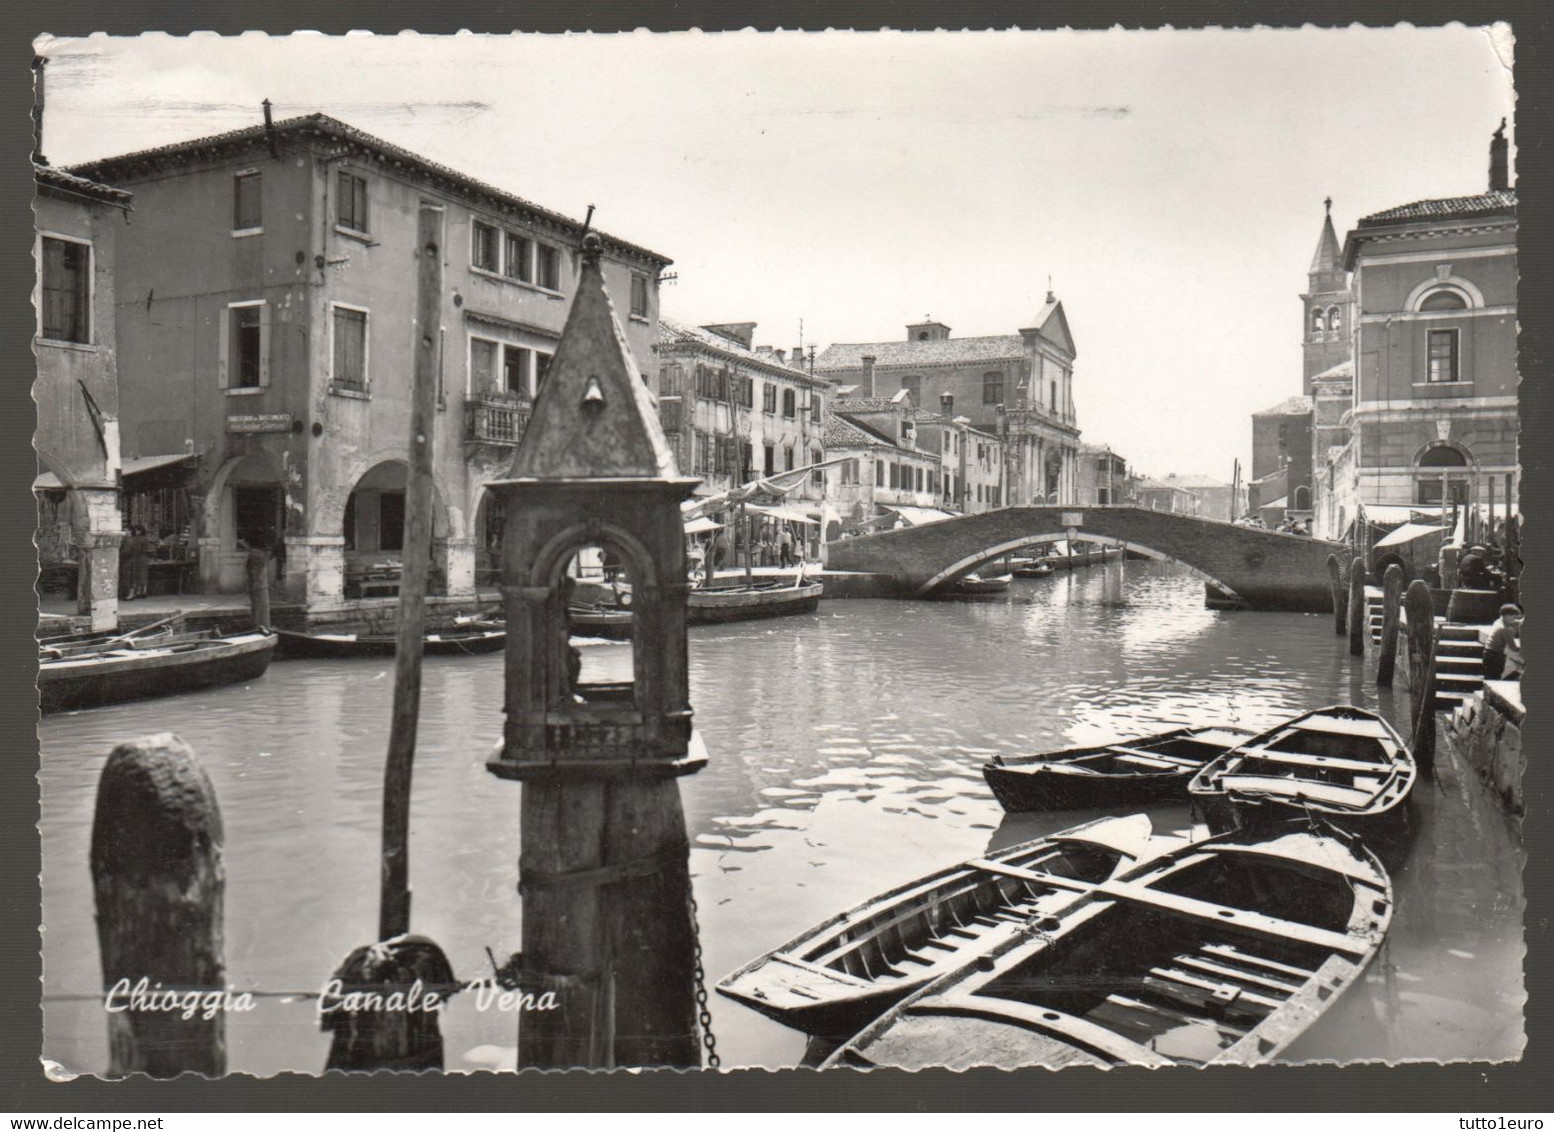 CHIOGGIA - VENEZIA - 1957 - CANALE VENA - Chioggia